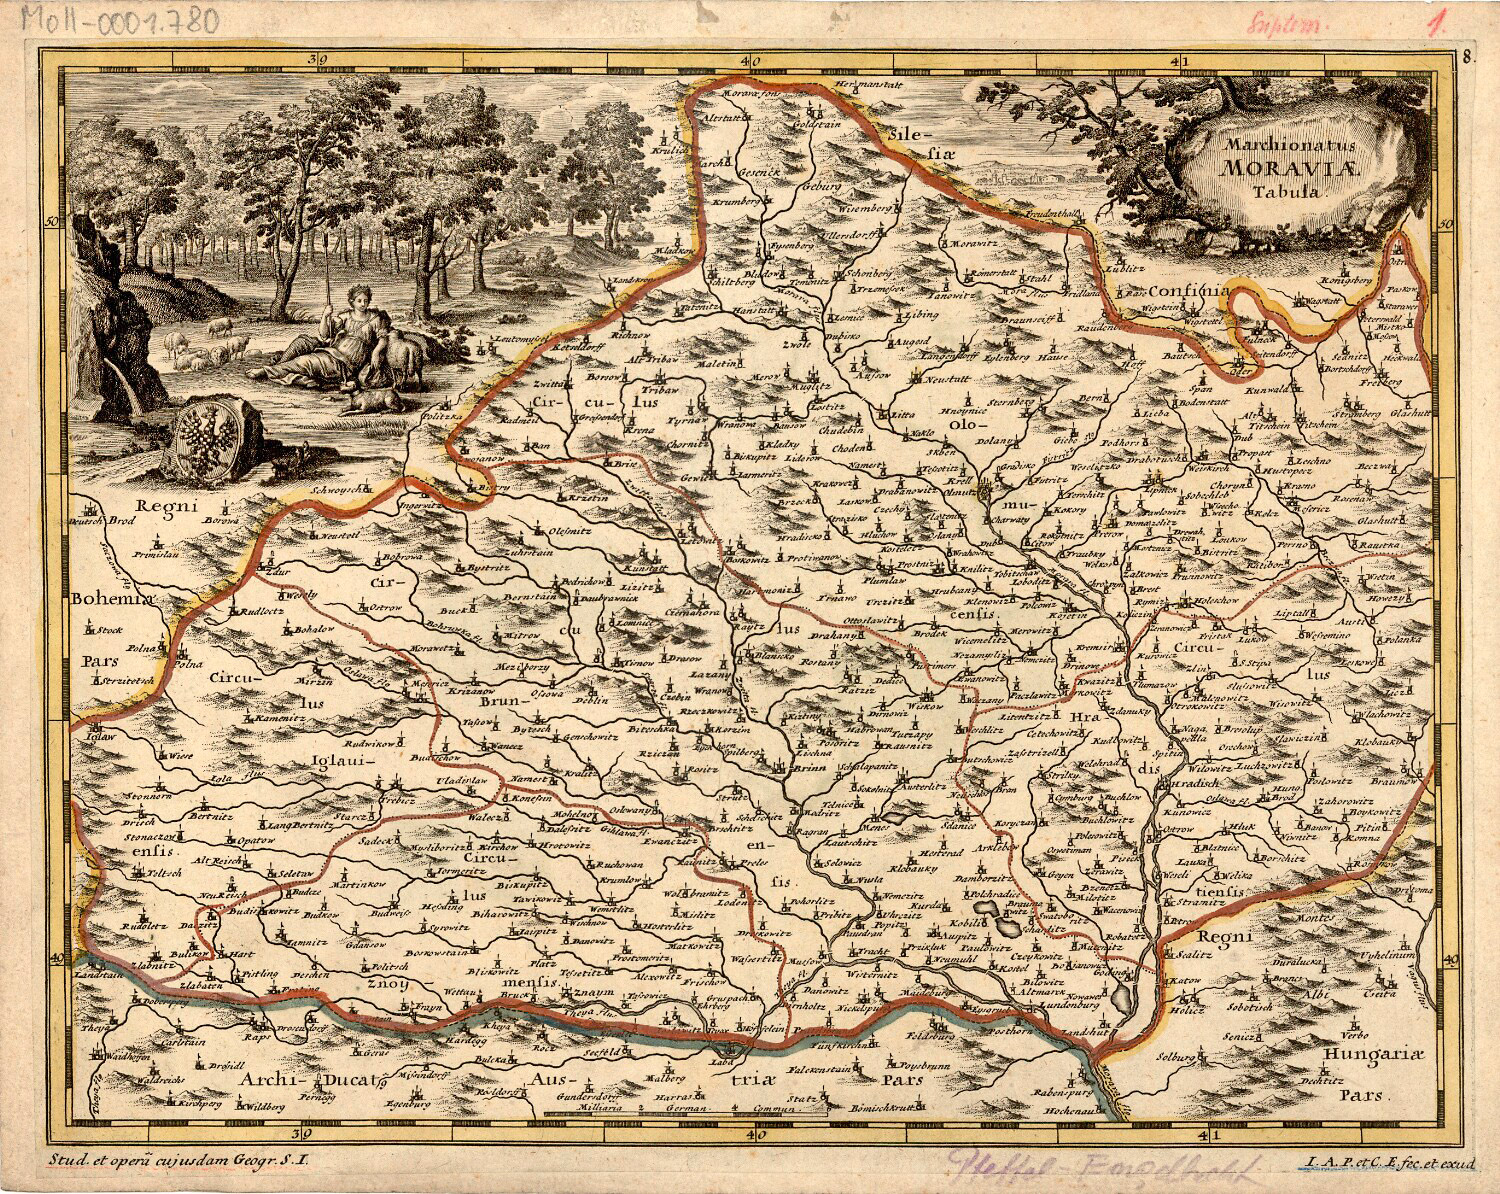 Jedna z variant Komenského mapy Moravy, vydaná ve spolupráci s Ch. Engelbrechtem v roce 1701 (zdroj: http://veduta-art.cz/?part1=mapy-veduty&part2=2-Morava&part3=104-Mapa-Moravy-1701).